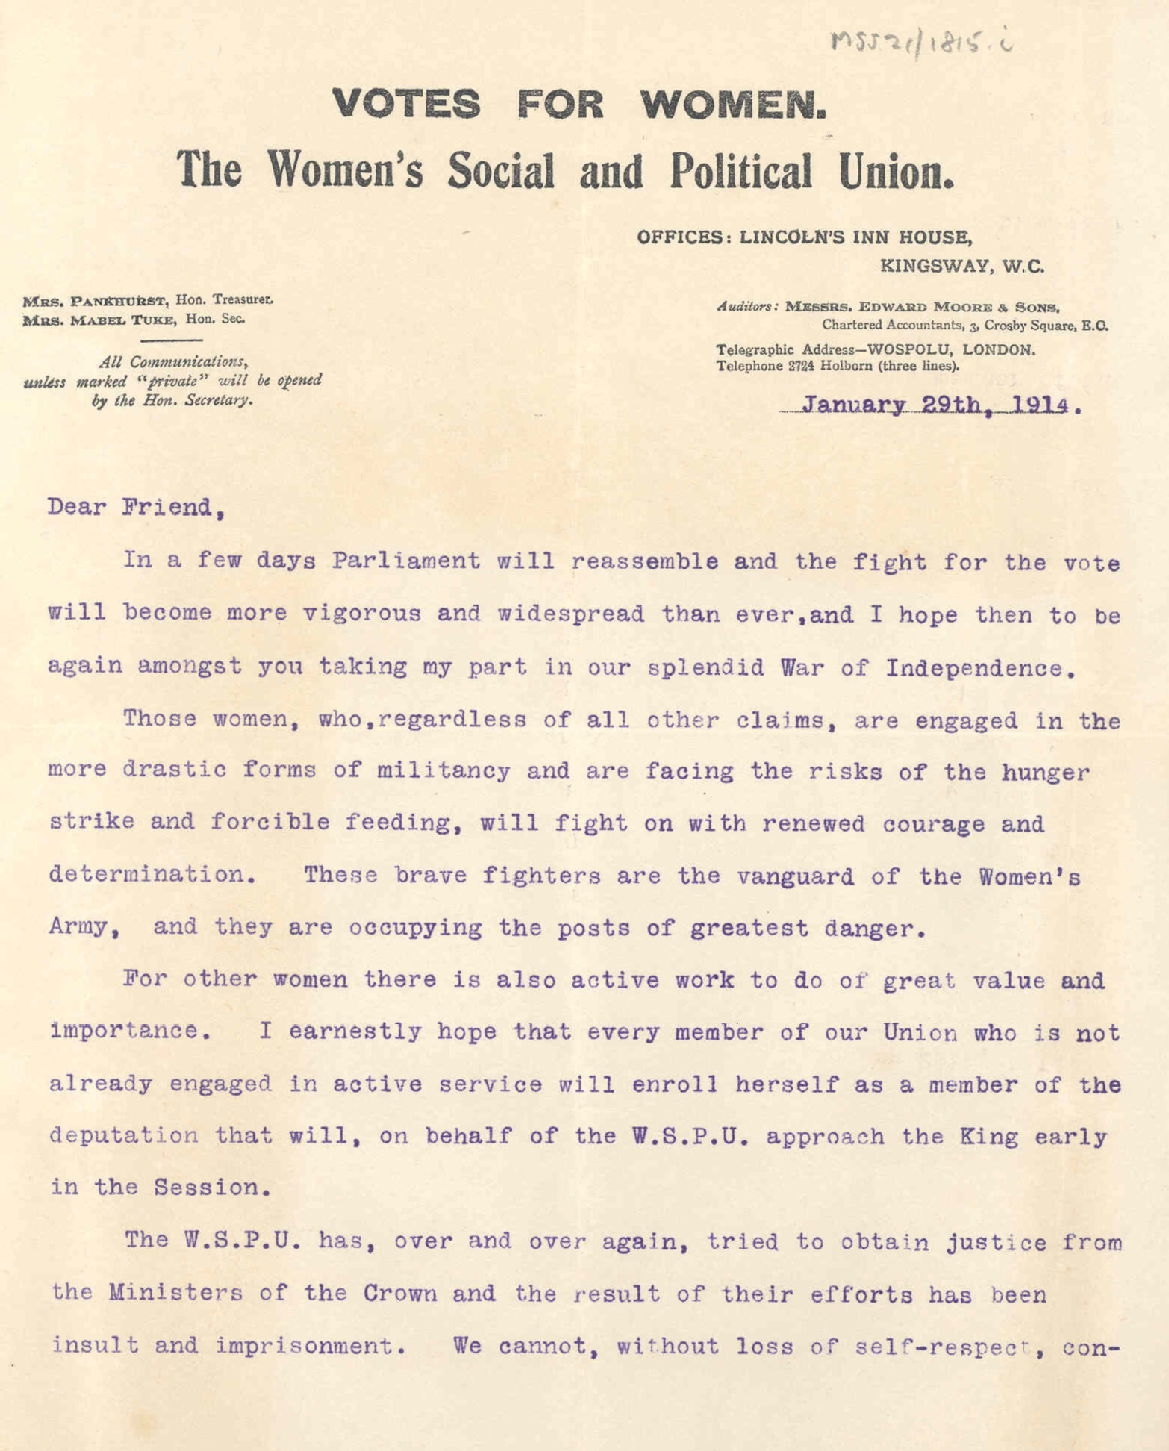 'Votes for Women' letter